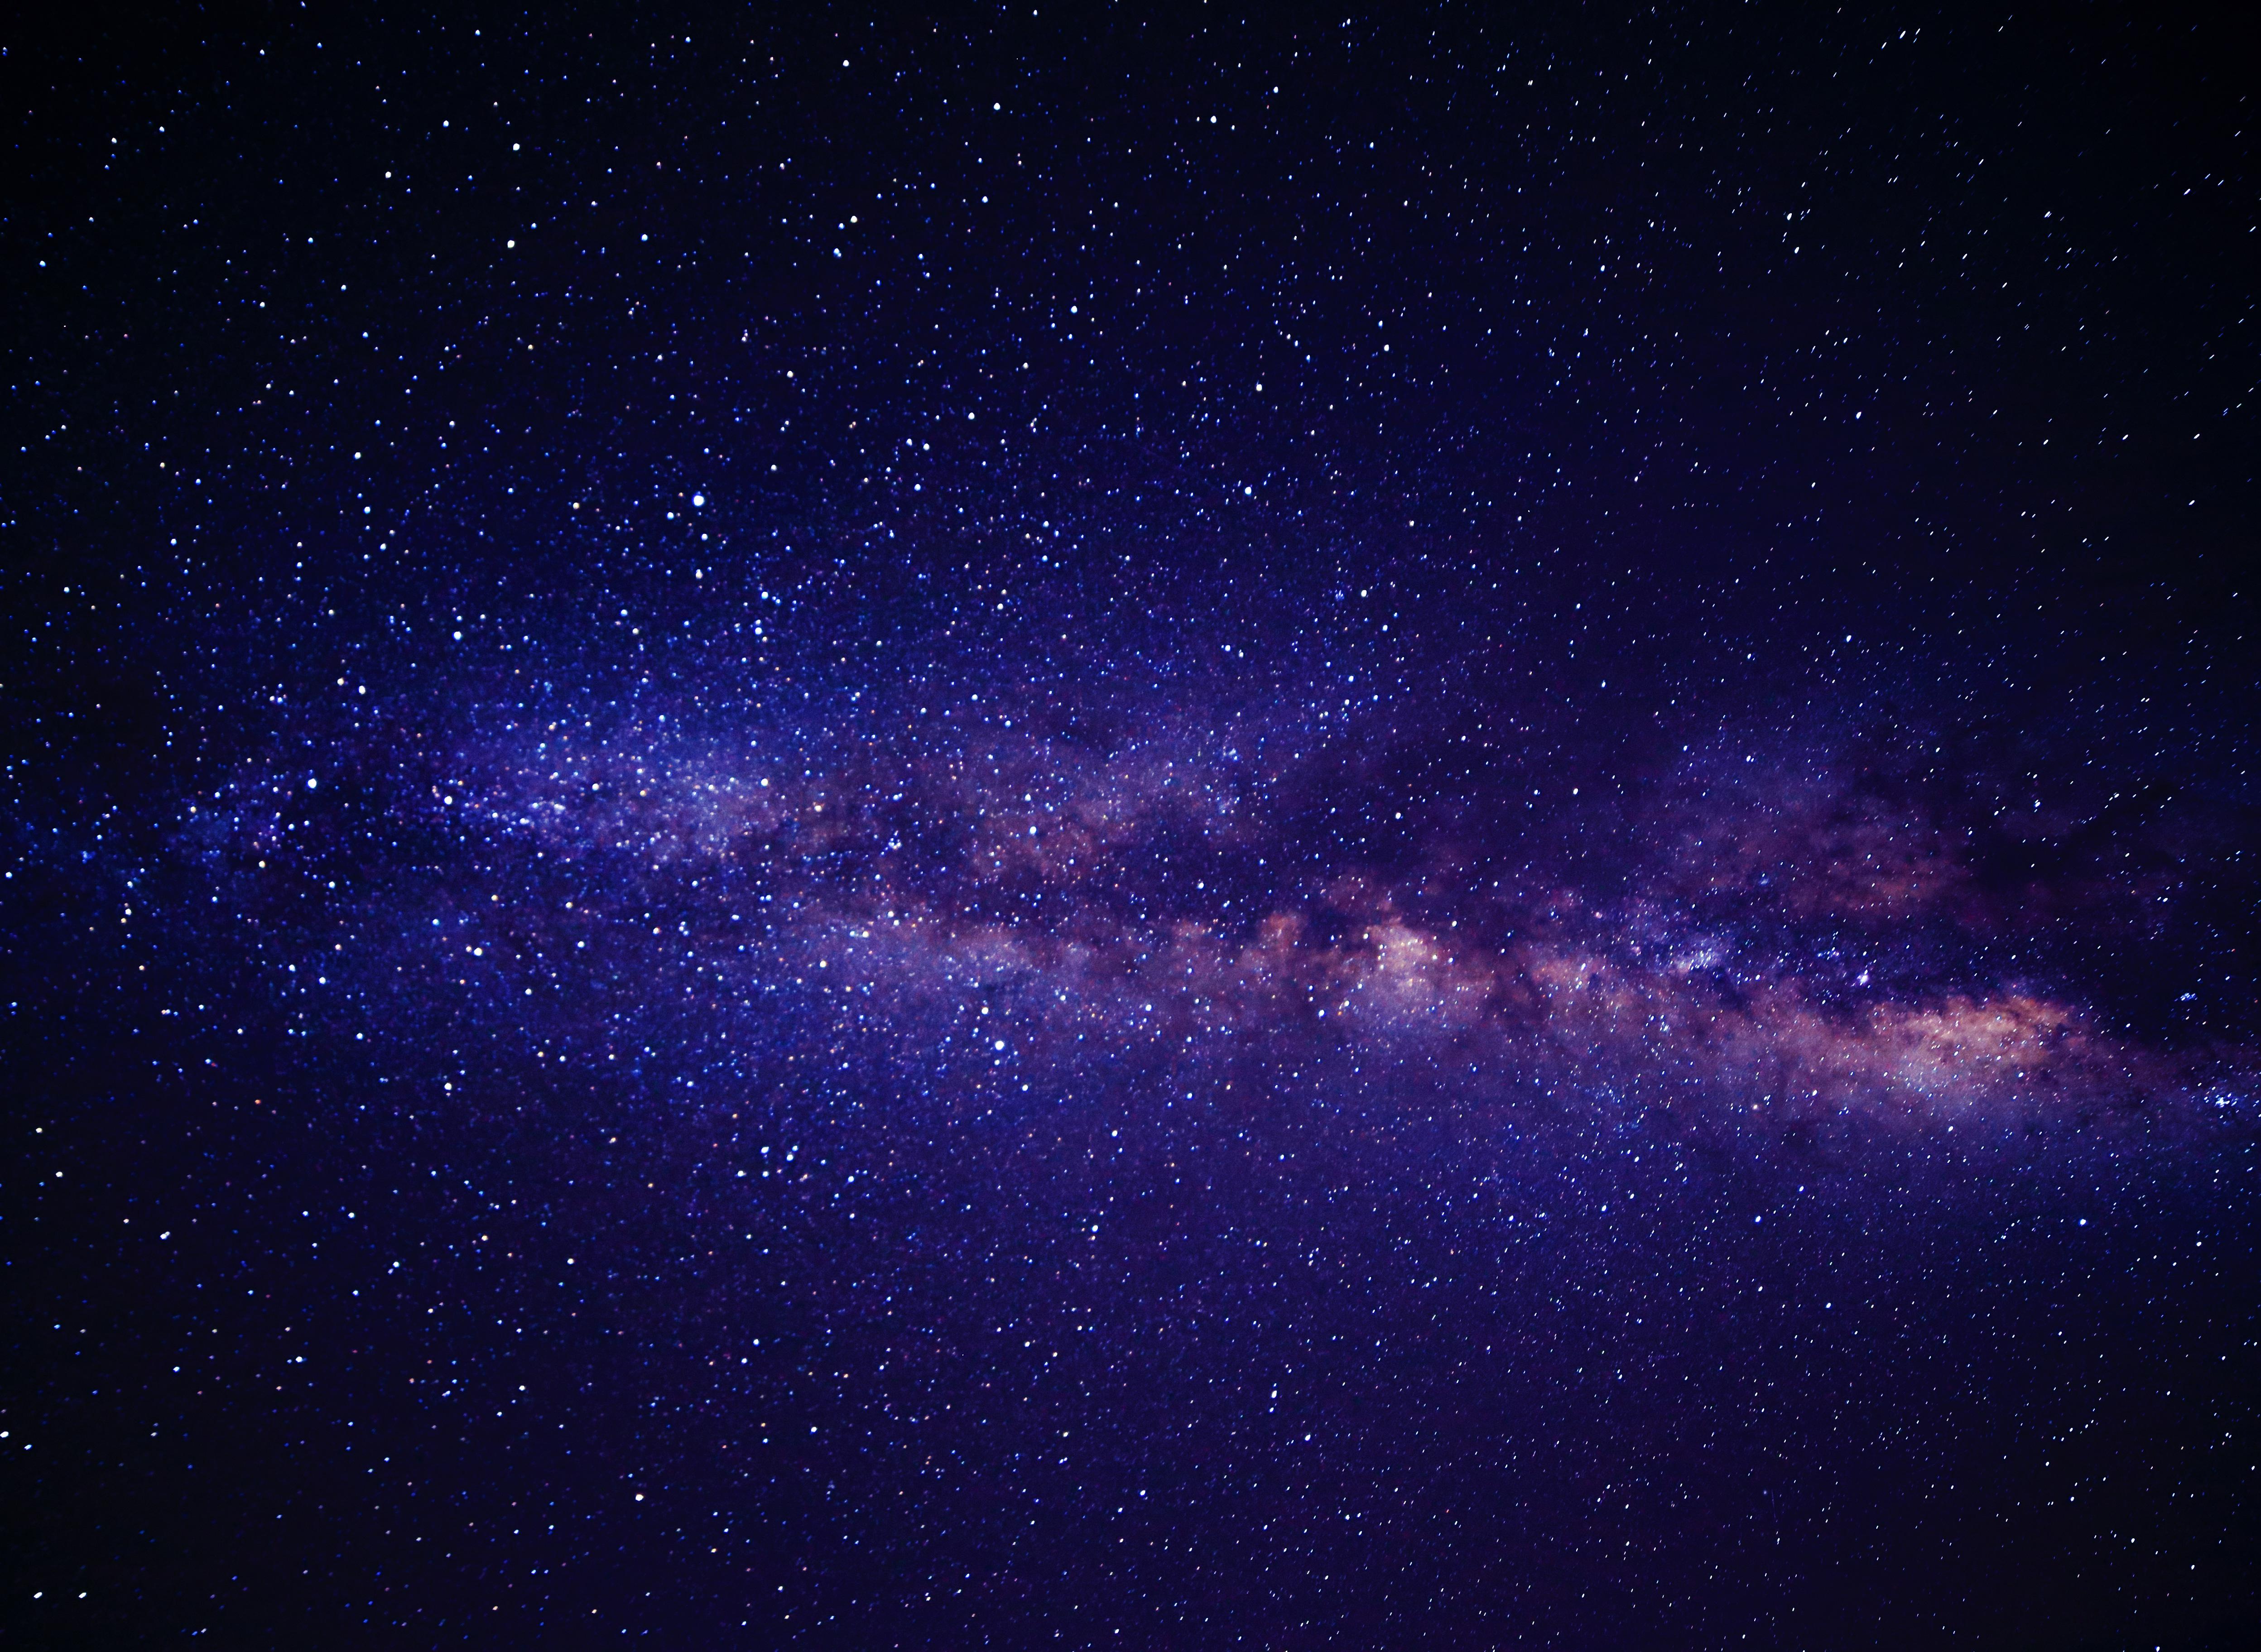 Andromeda Galaxy Way, HD Digital Universe, 4k Wallpaper, Image